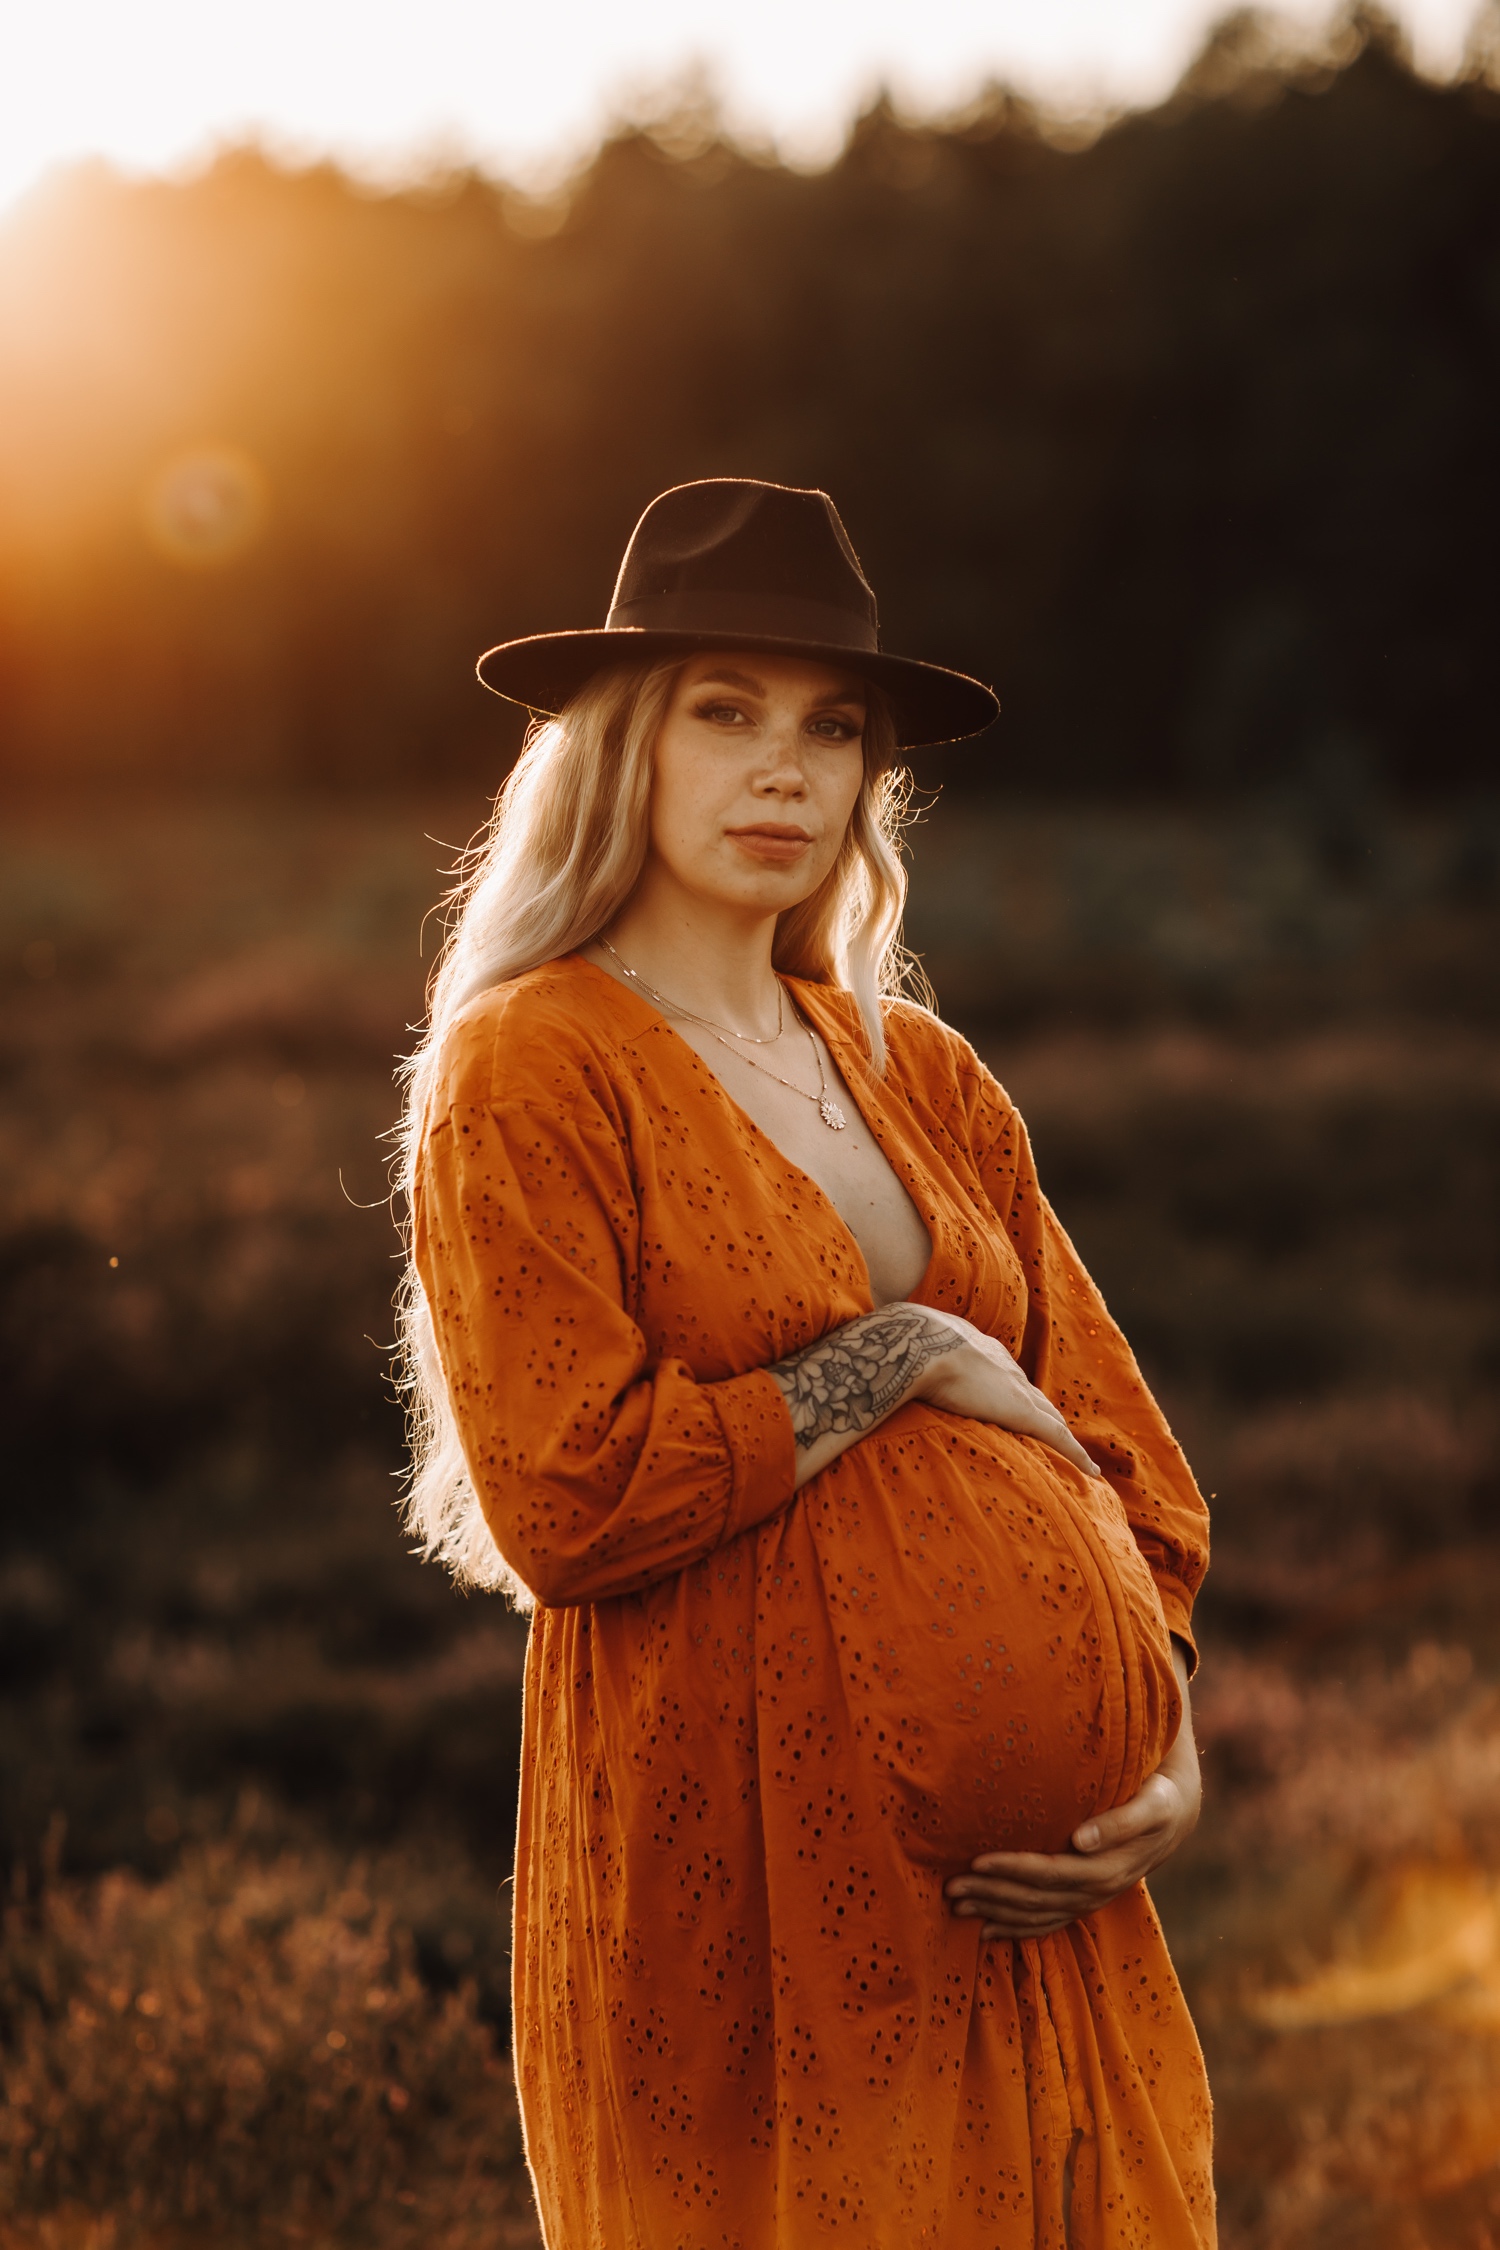 gezinsfotograaf zwangerschap huwelijksfotograaf